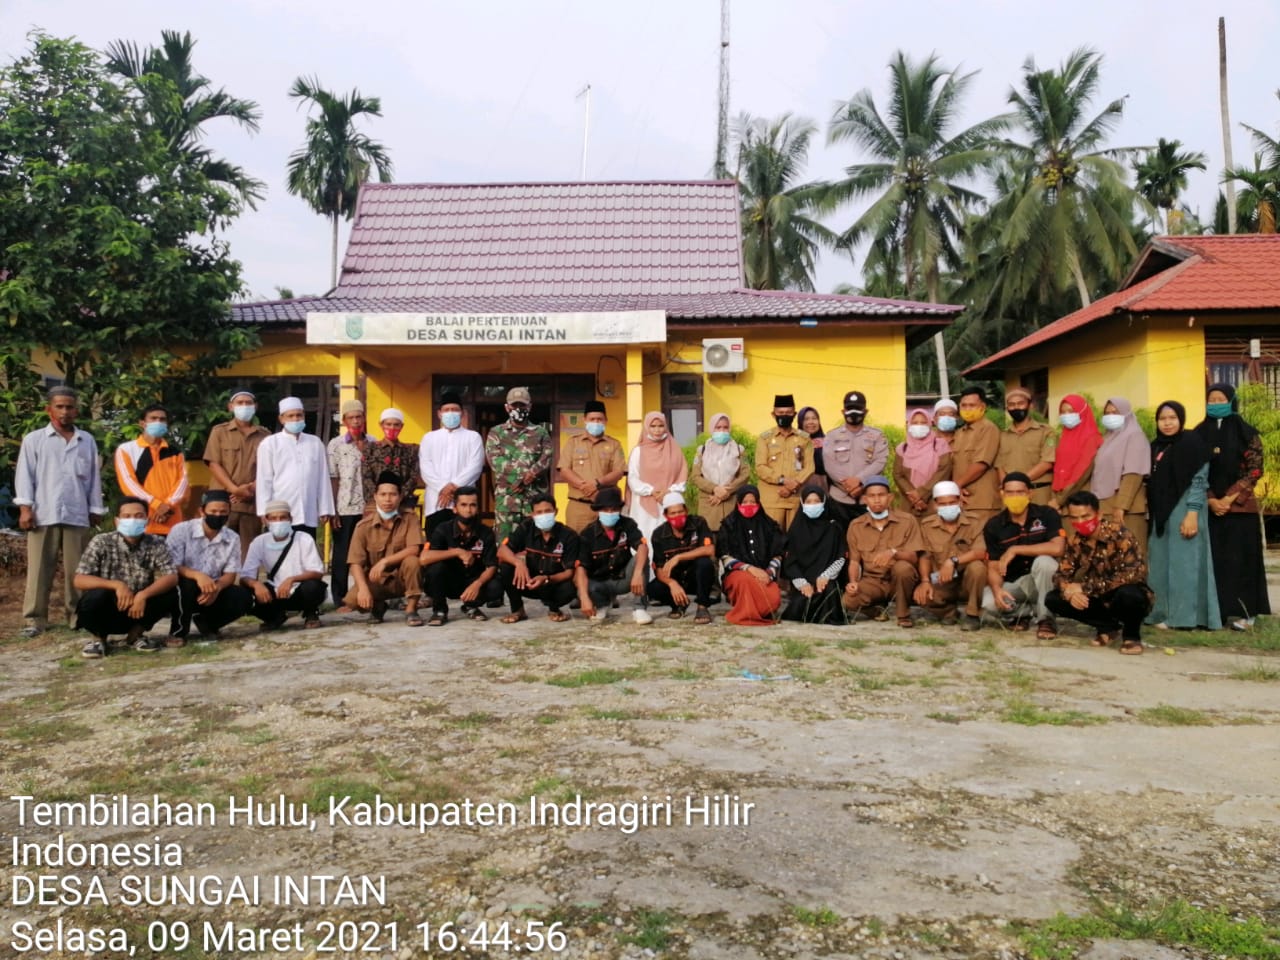 Jalin Silaturahmi, Camat Tembilahan Hulu Laksanakan Kunjungan Ke Desa Sungai Intan